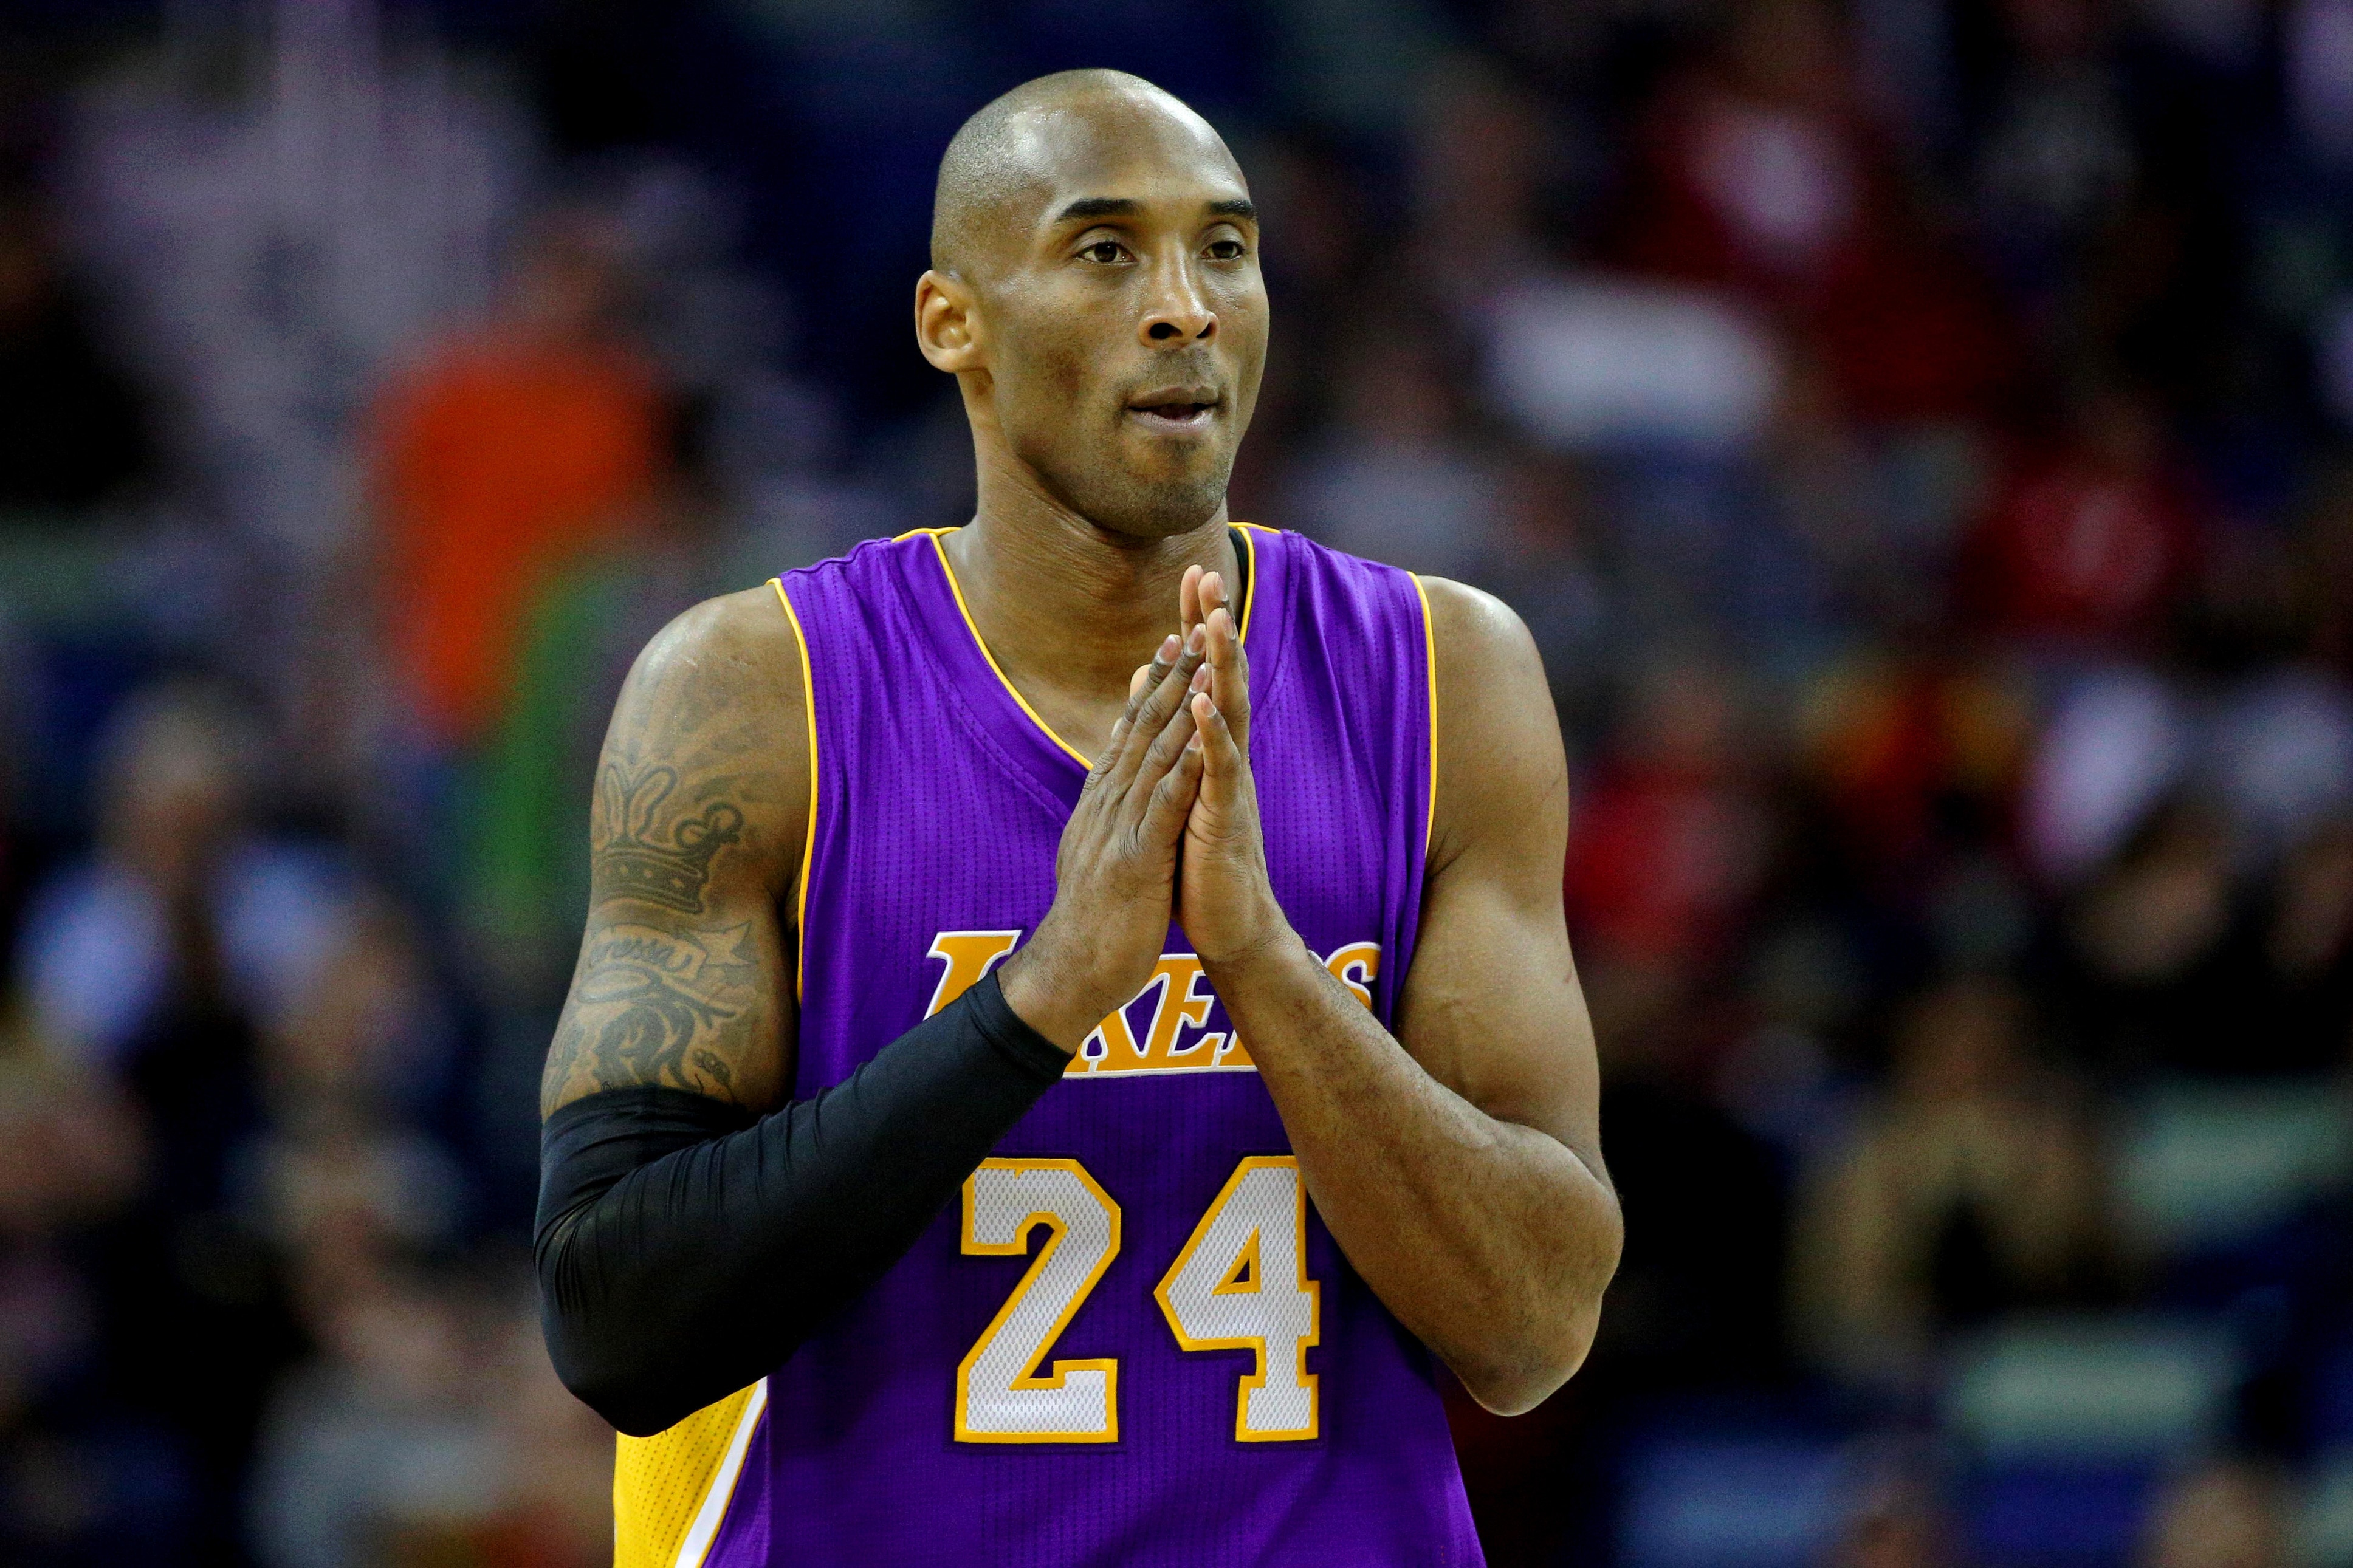 Ex-jogador Kobe Bryant morre em acidente aéreo